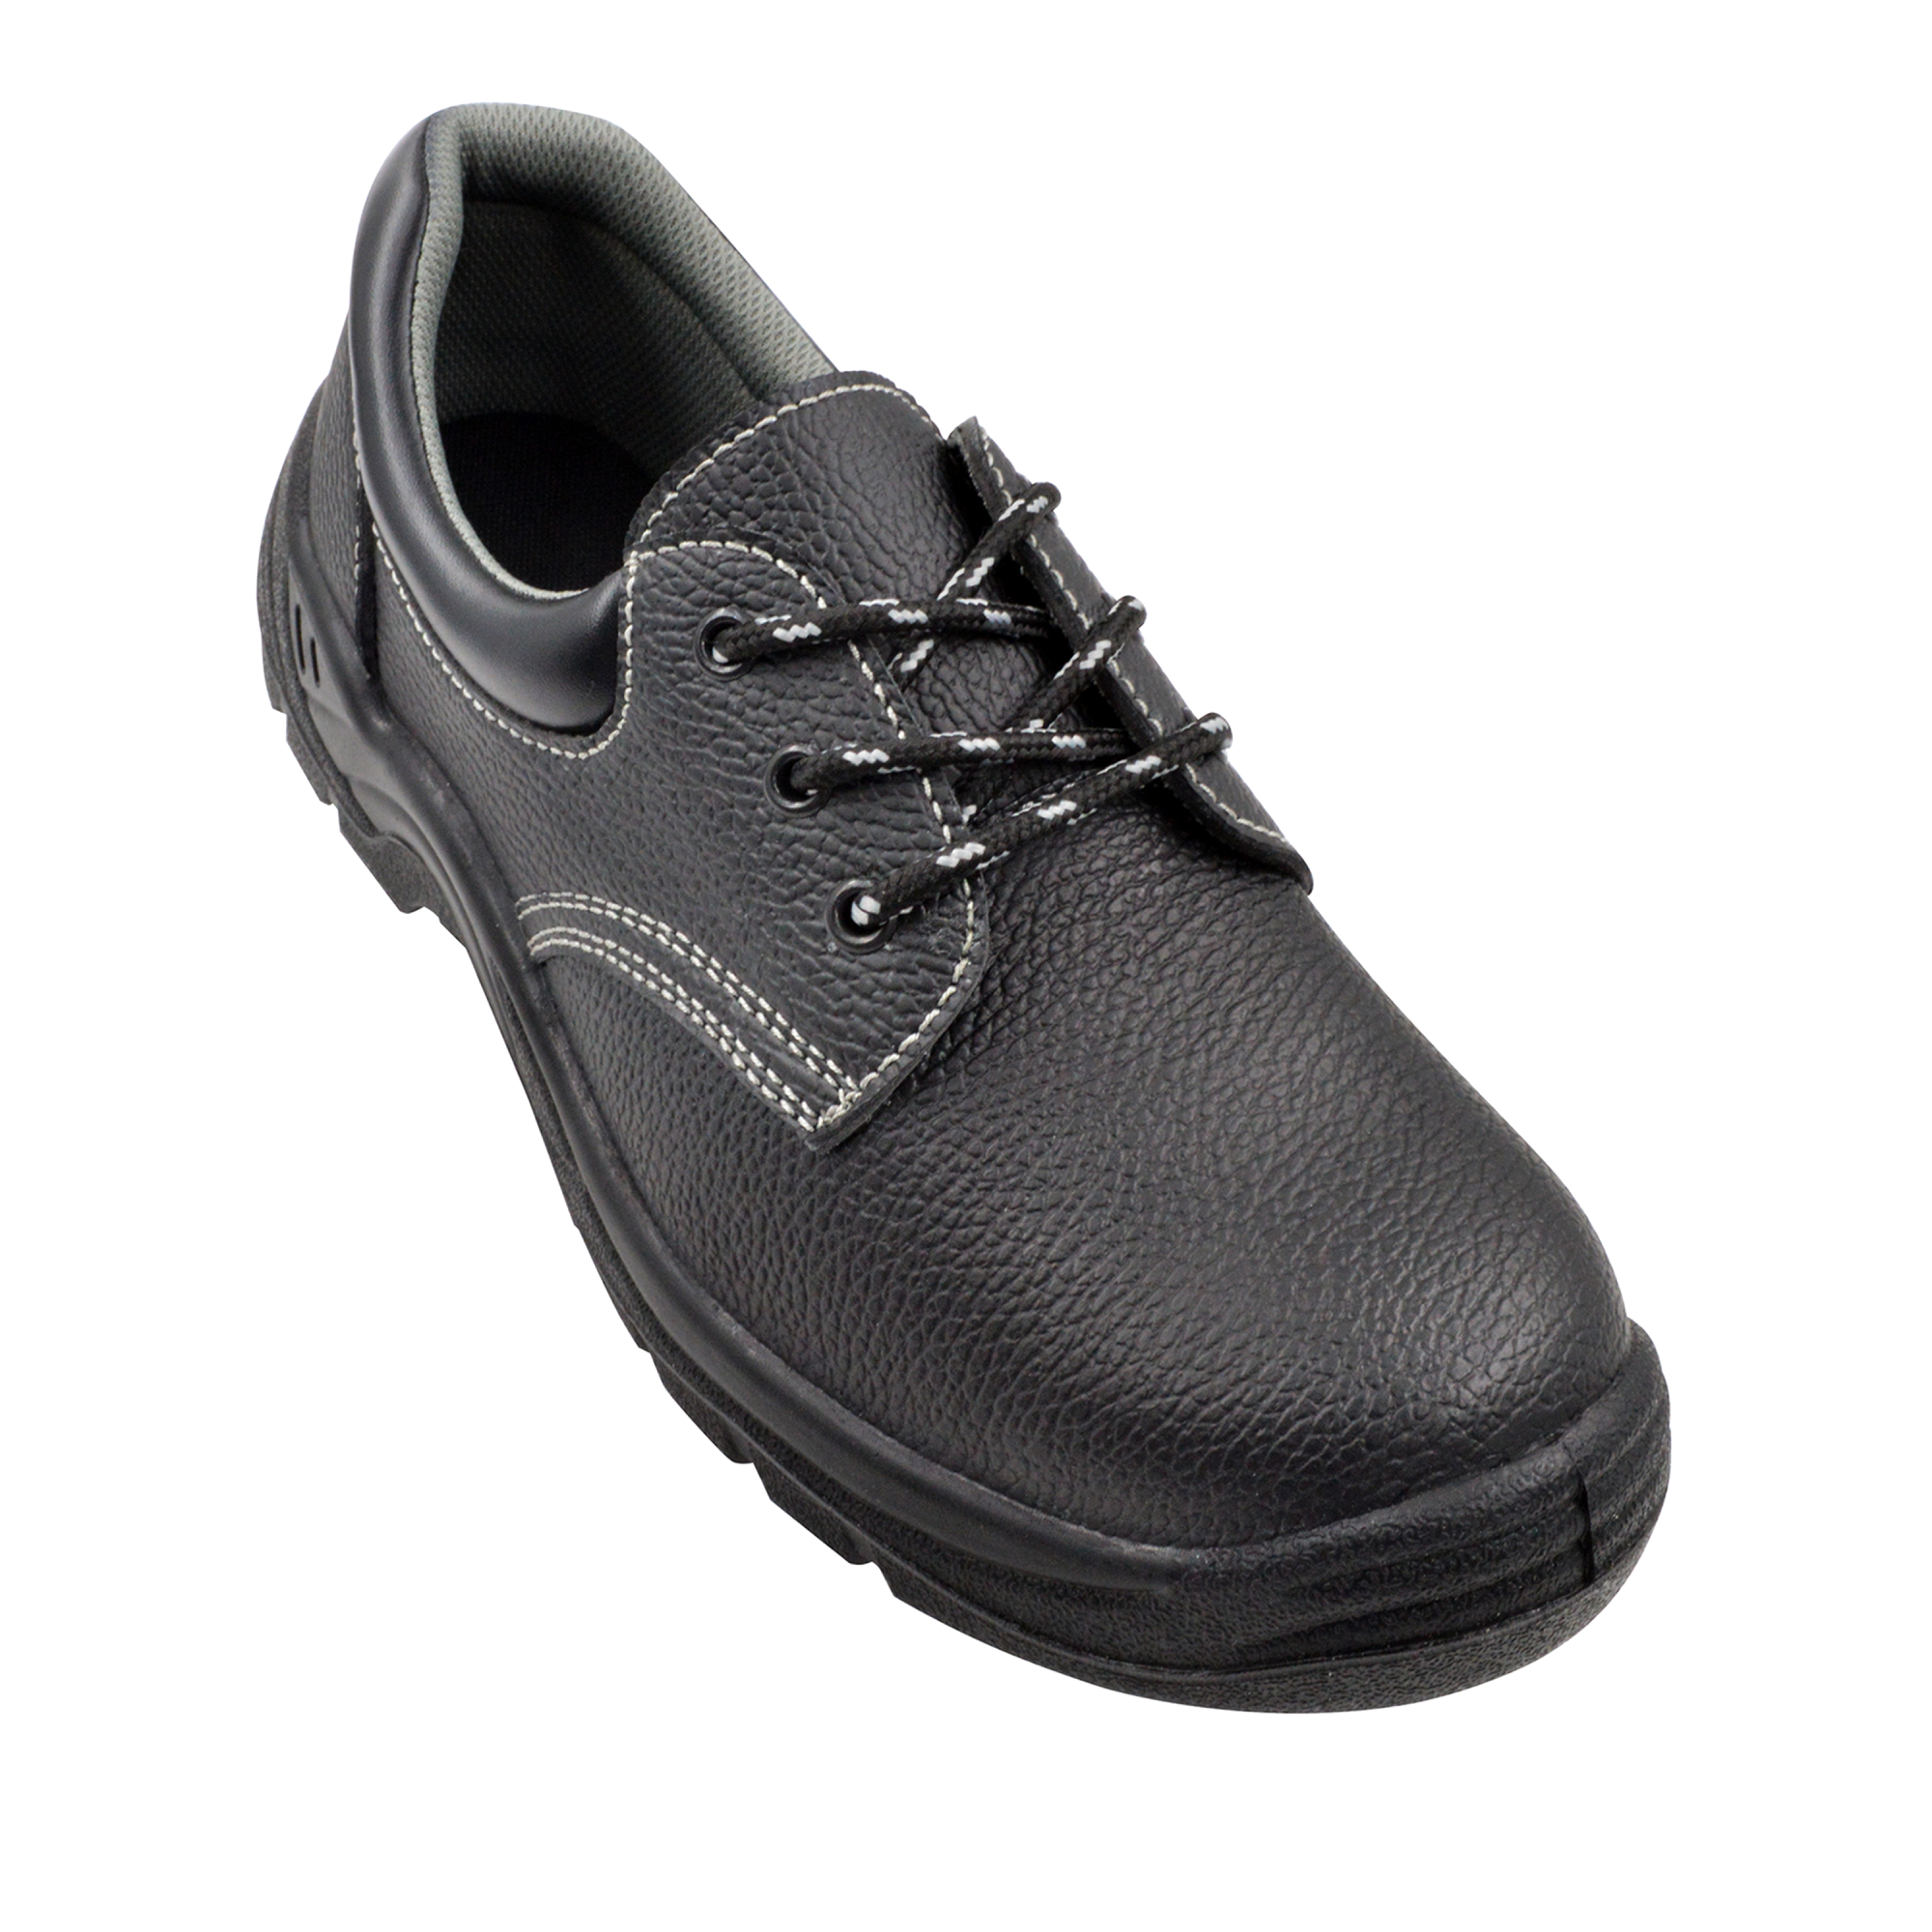 Zapatos de seguridad p negro negro t40